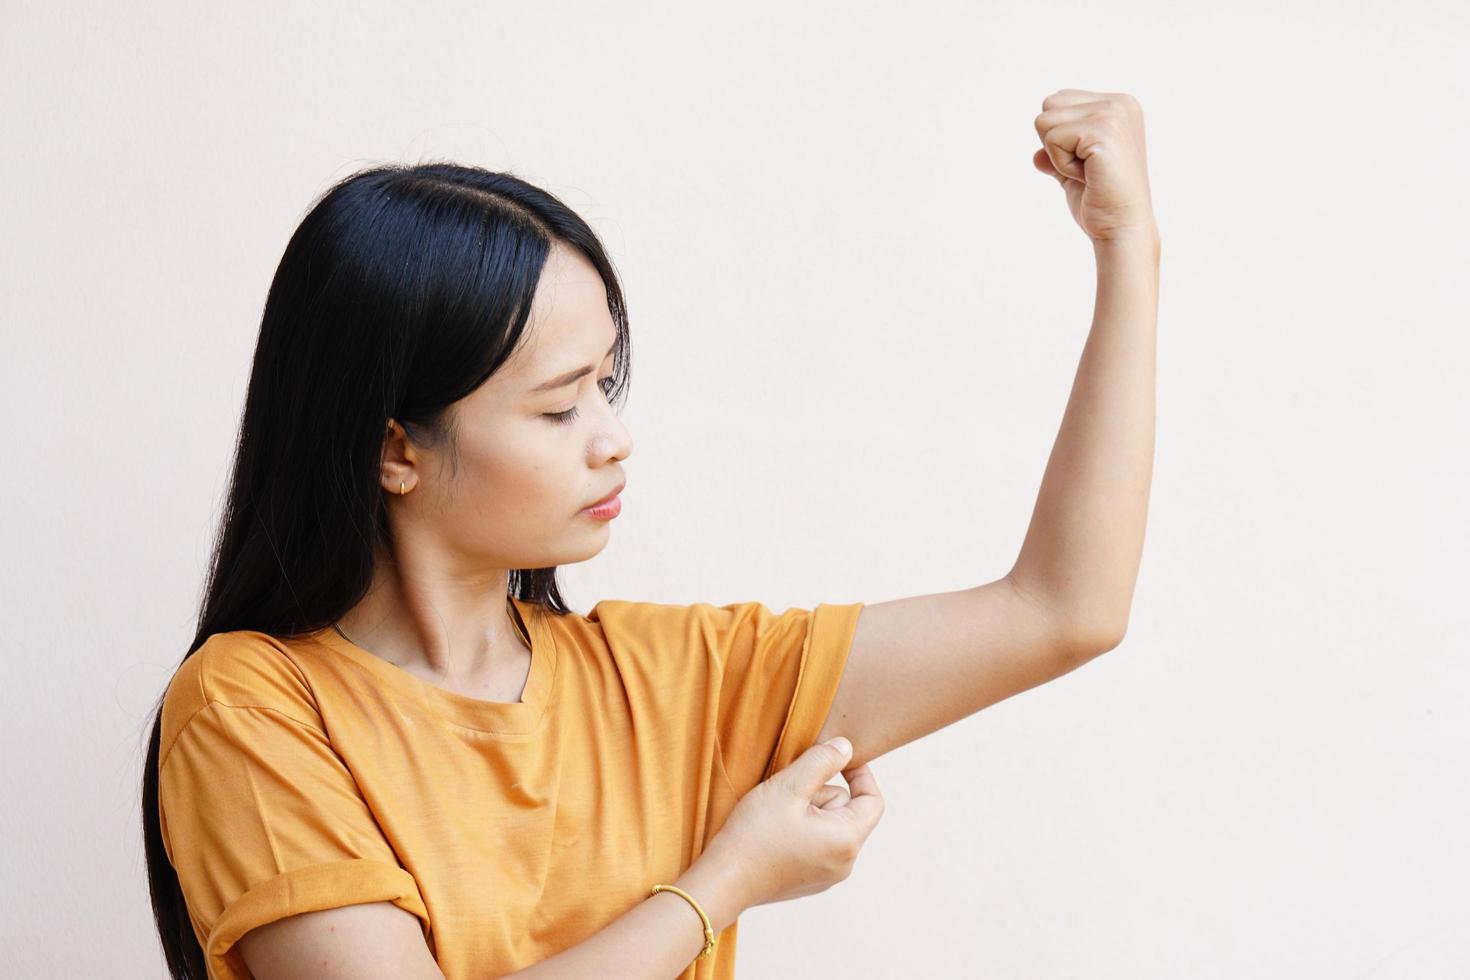 les femmes asiatiques utilisent leurs mains sur la peau sous leurs bras pour voir si elles ont beaucoup de graisse ou de mollesse. photo